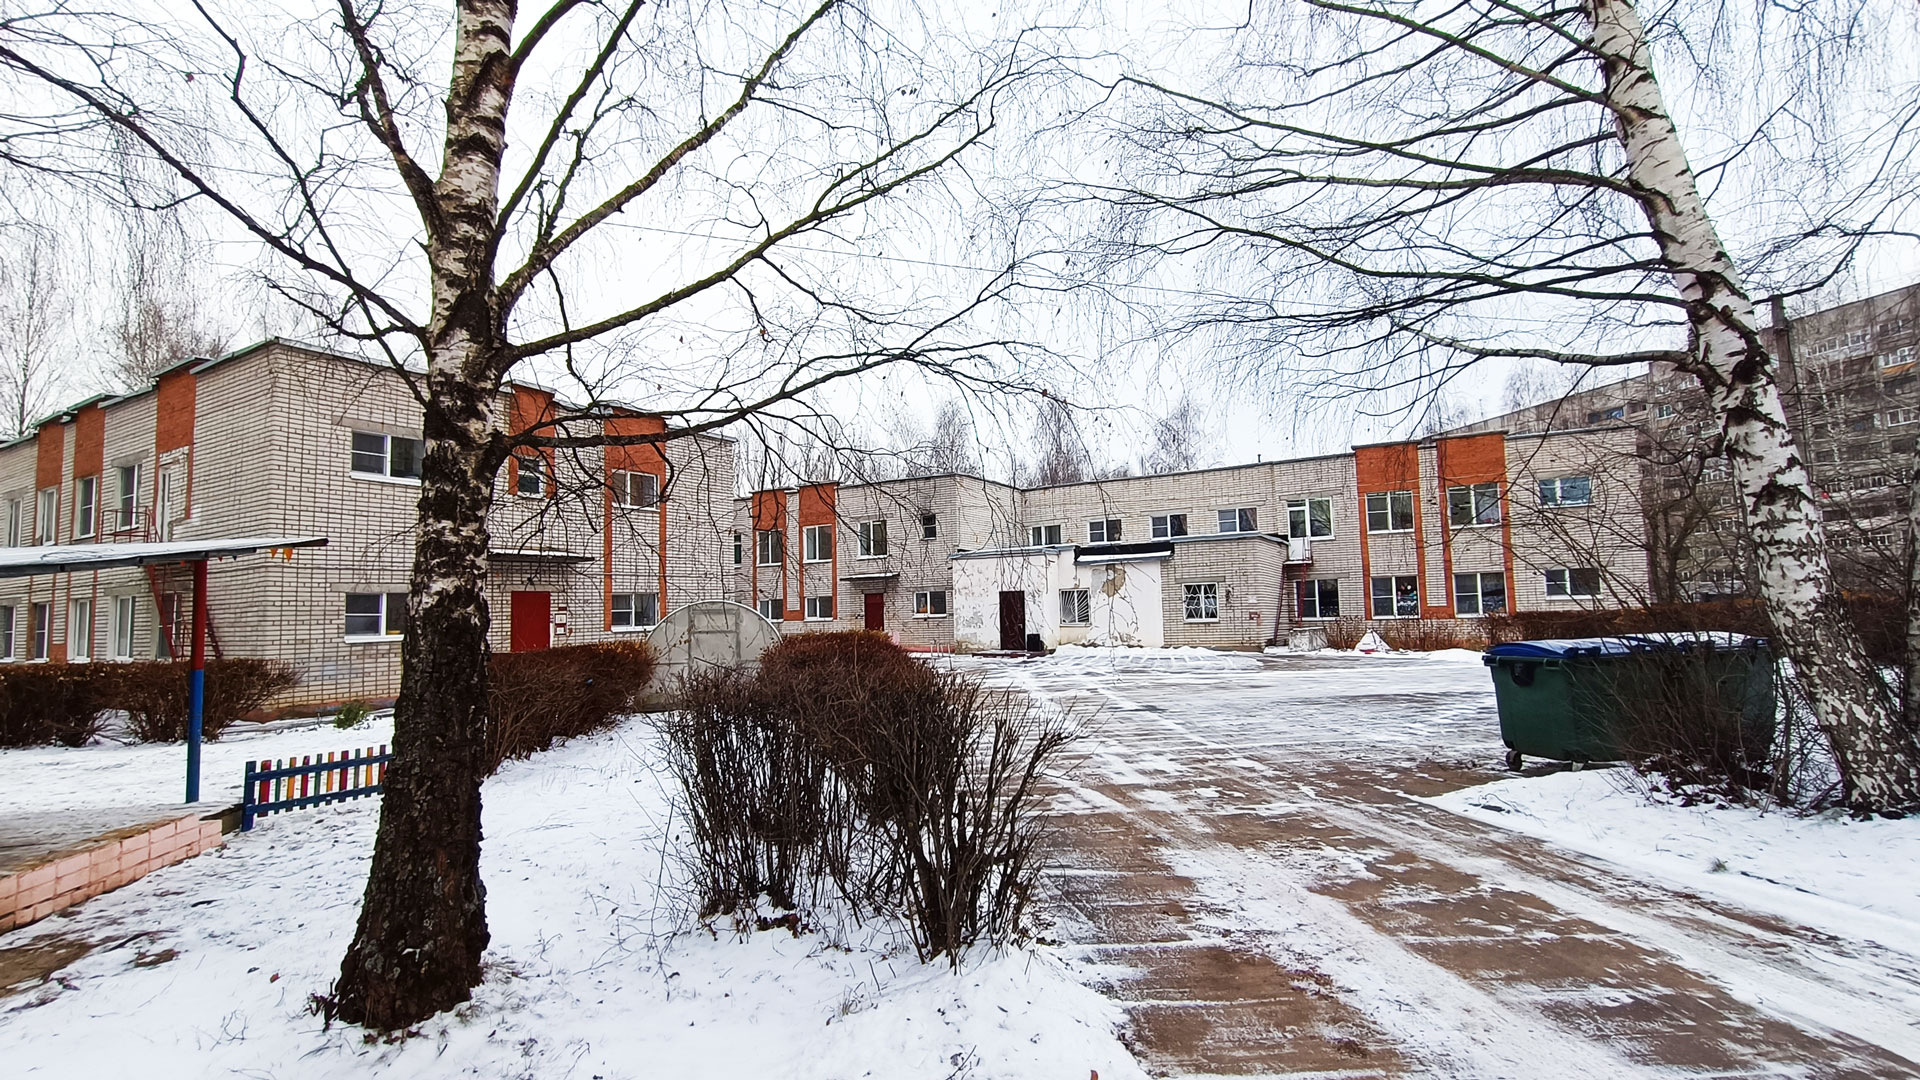 Детский сад 142 Ярославль: общий вид здания и территории.